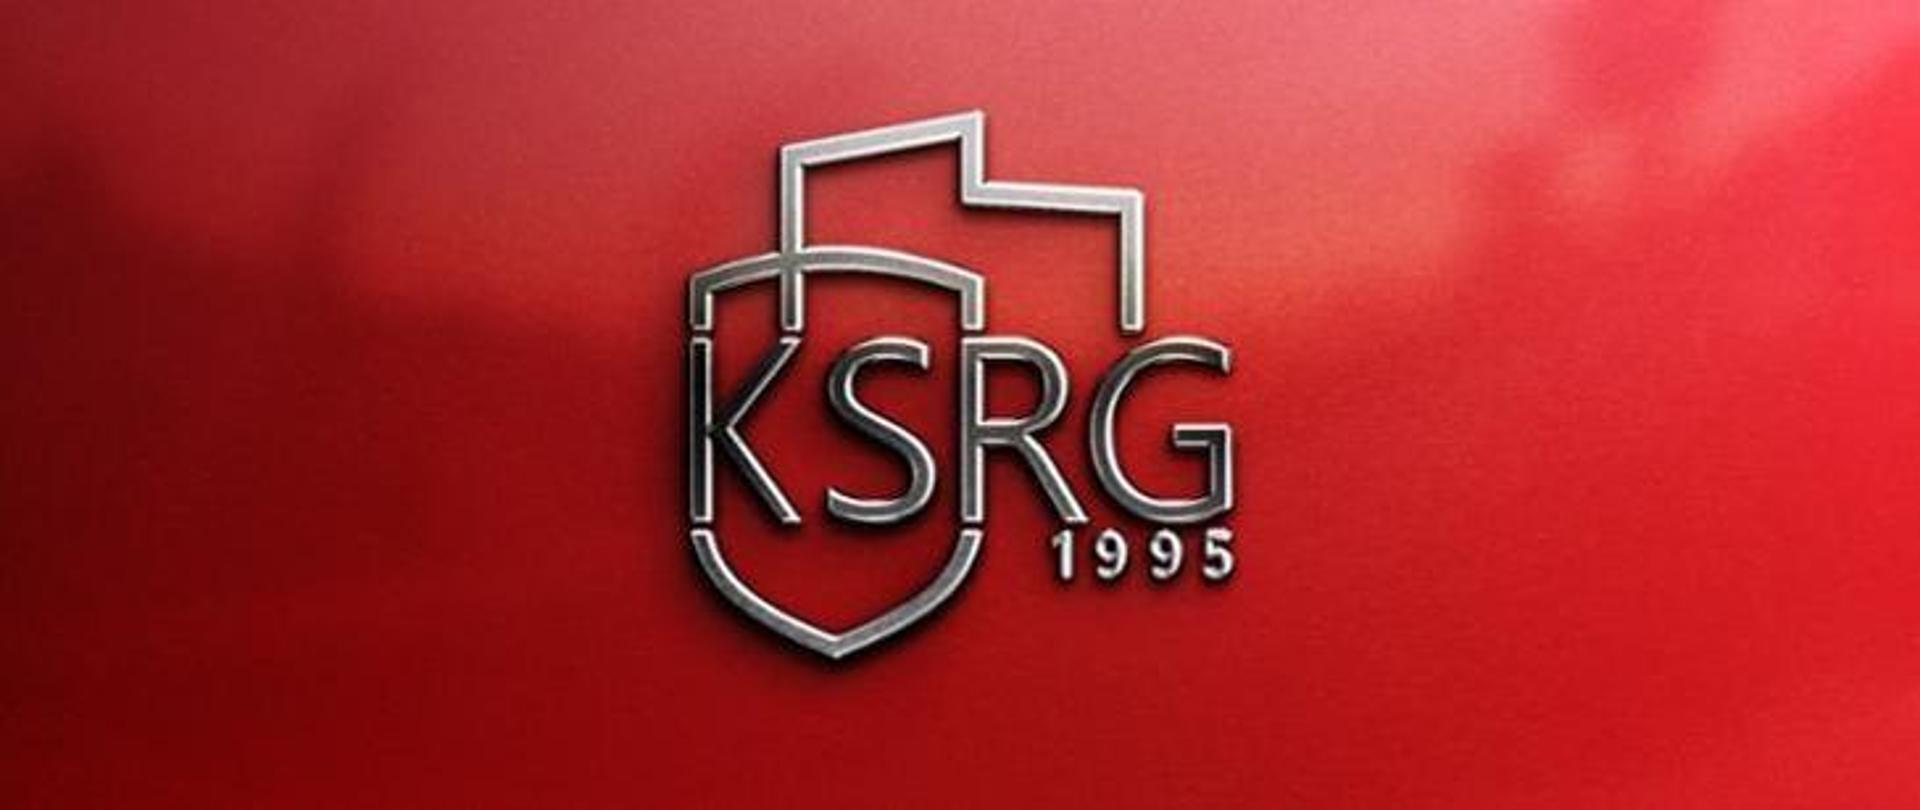 na czerwonym tle graficznie przedstawiony napis KSRG 1995 z fragmentem konturu Polski